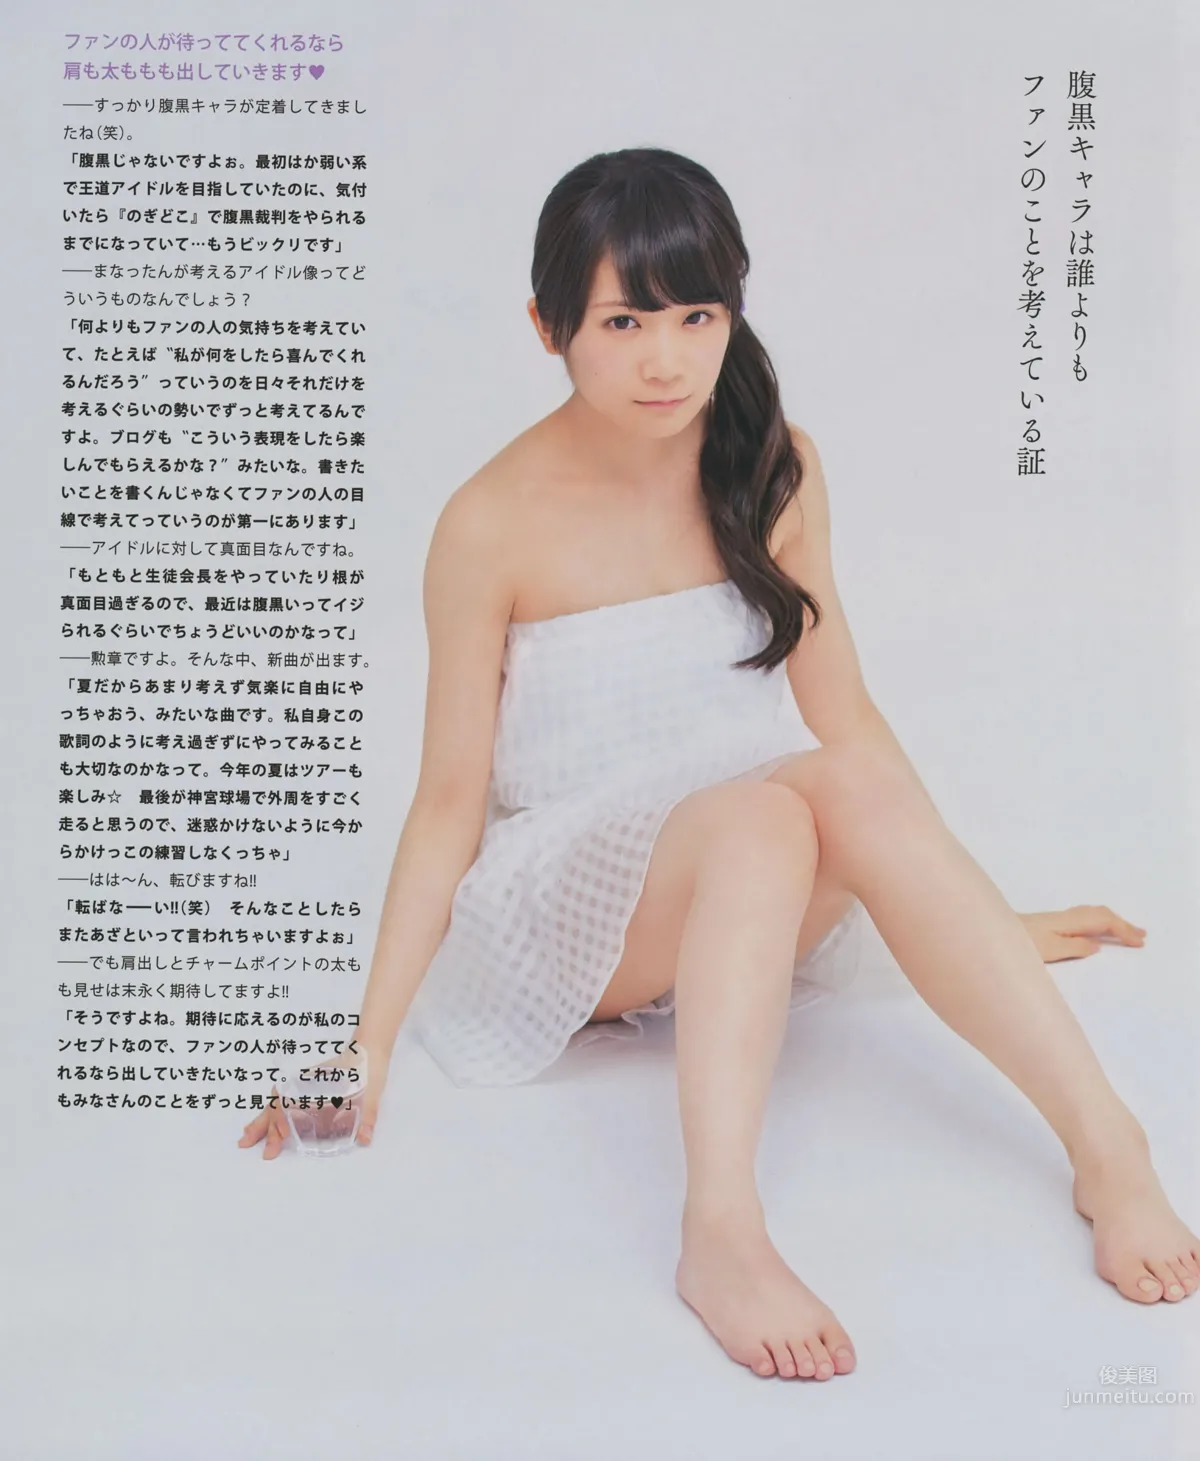 [Bomb Magazine] 2014.08 09 乃木坂46 SKE48_6